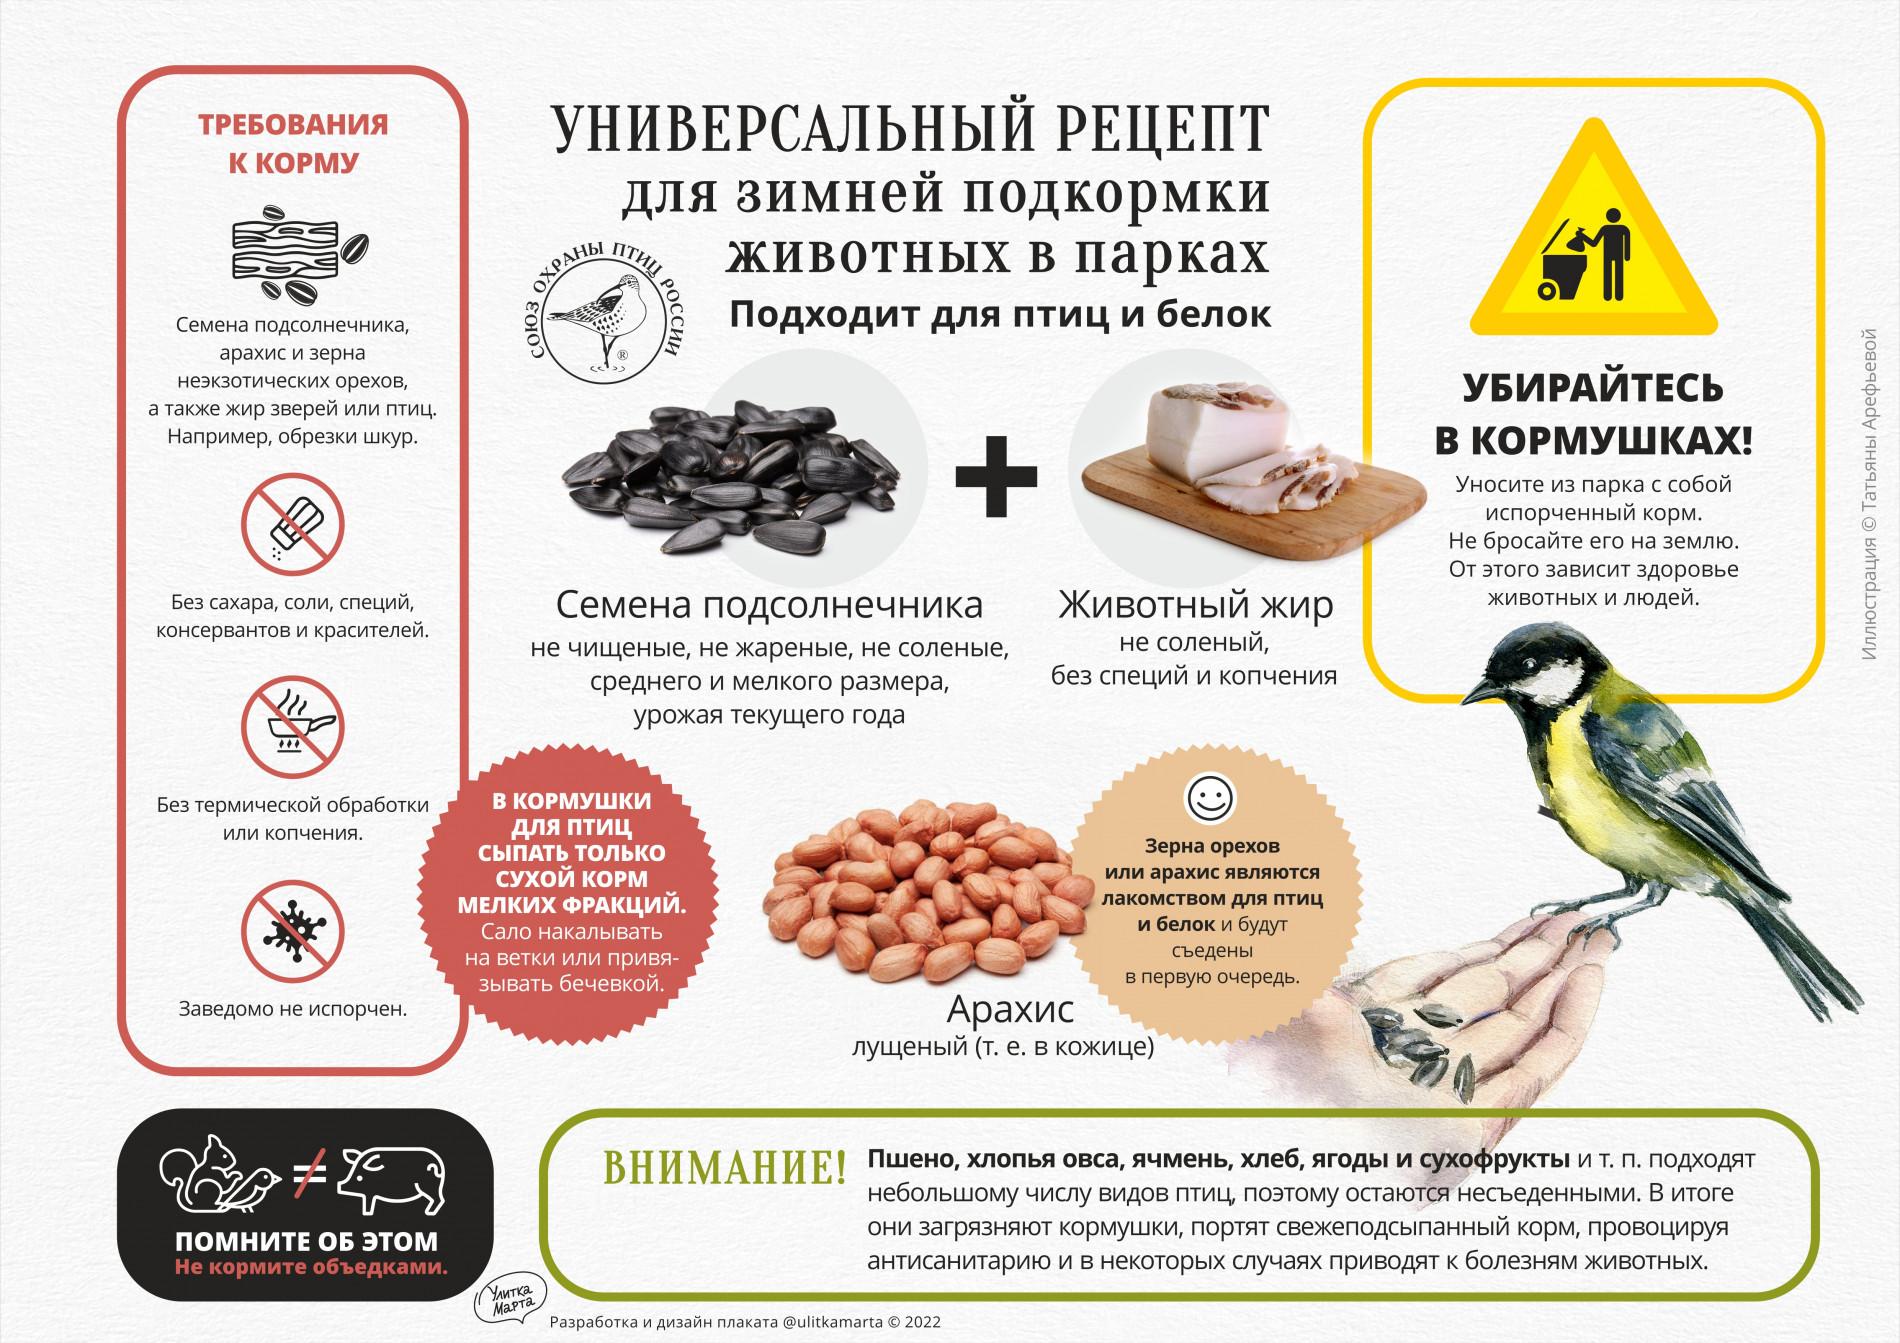 Как правильно кормить птиц зимой? Инфографика :: Это интересно! | Лэпбук,  Лэпбуки, Следы животных